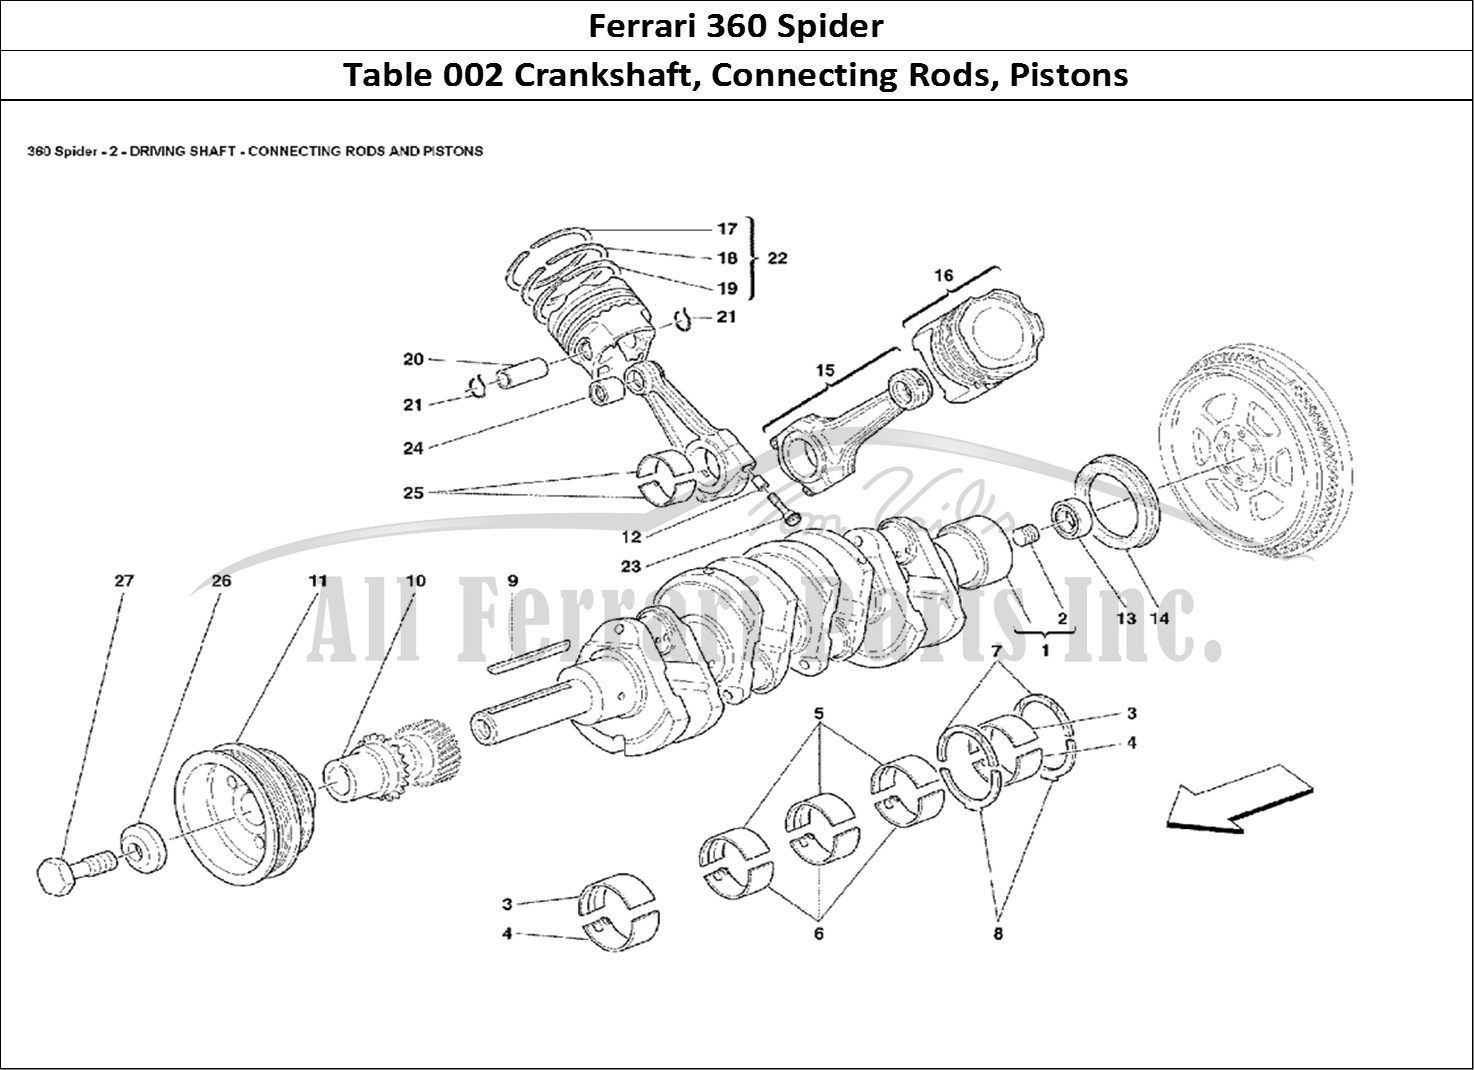 Ferrari Parts Ferrari 360 Spider Page 002 Crankshaft, Conrods And P